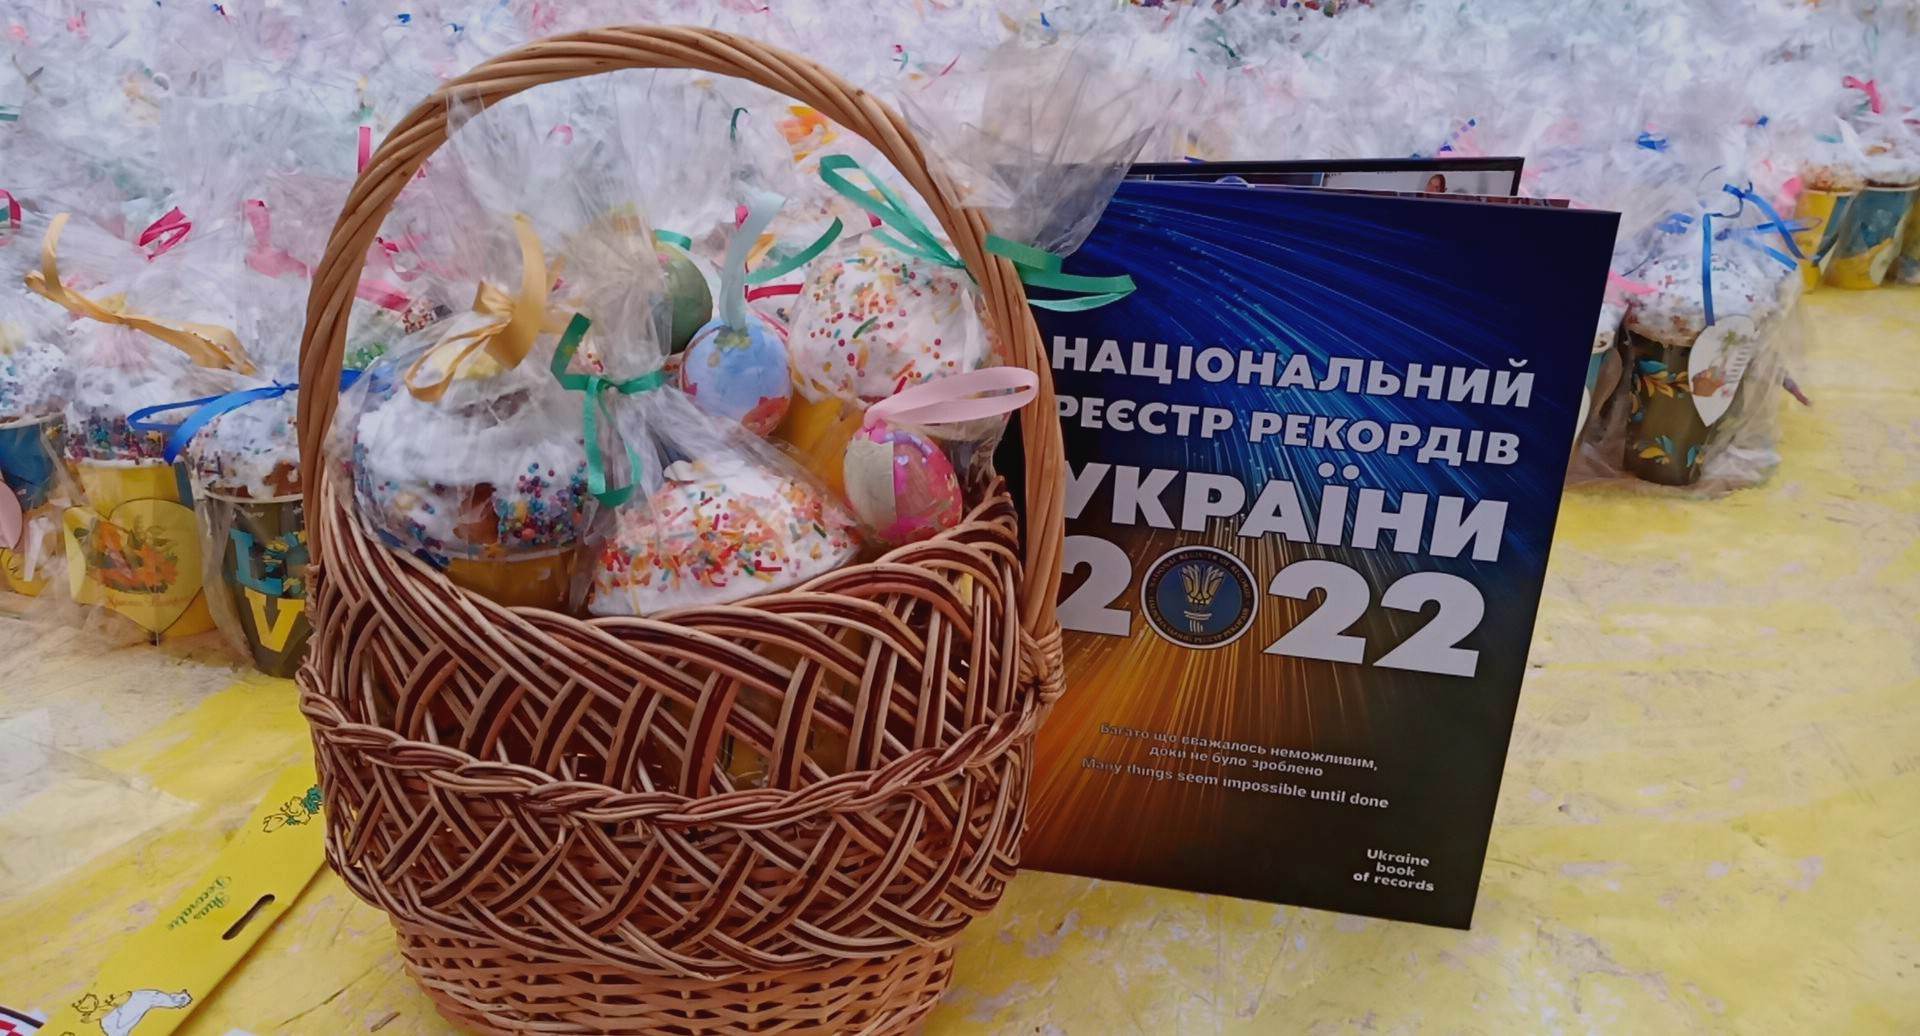 В городе на Одесщине установили национальный рекорд, создав карту Украины по пасхальным ремням для ВСУ